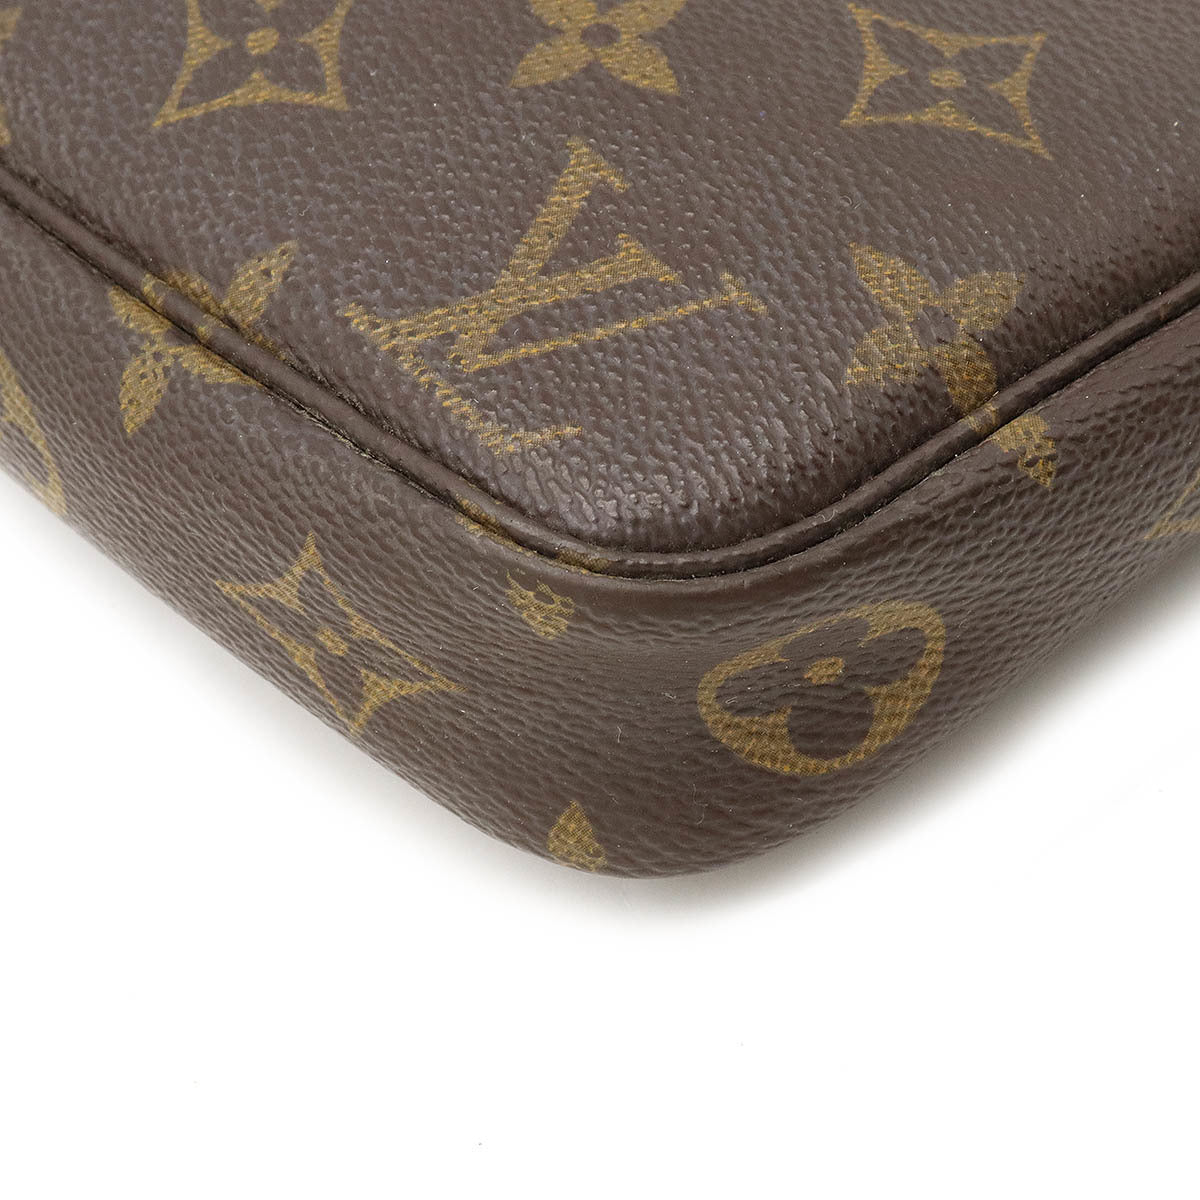 Louis Vuitton Pochette Accessoires Sac à main M51980